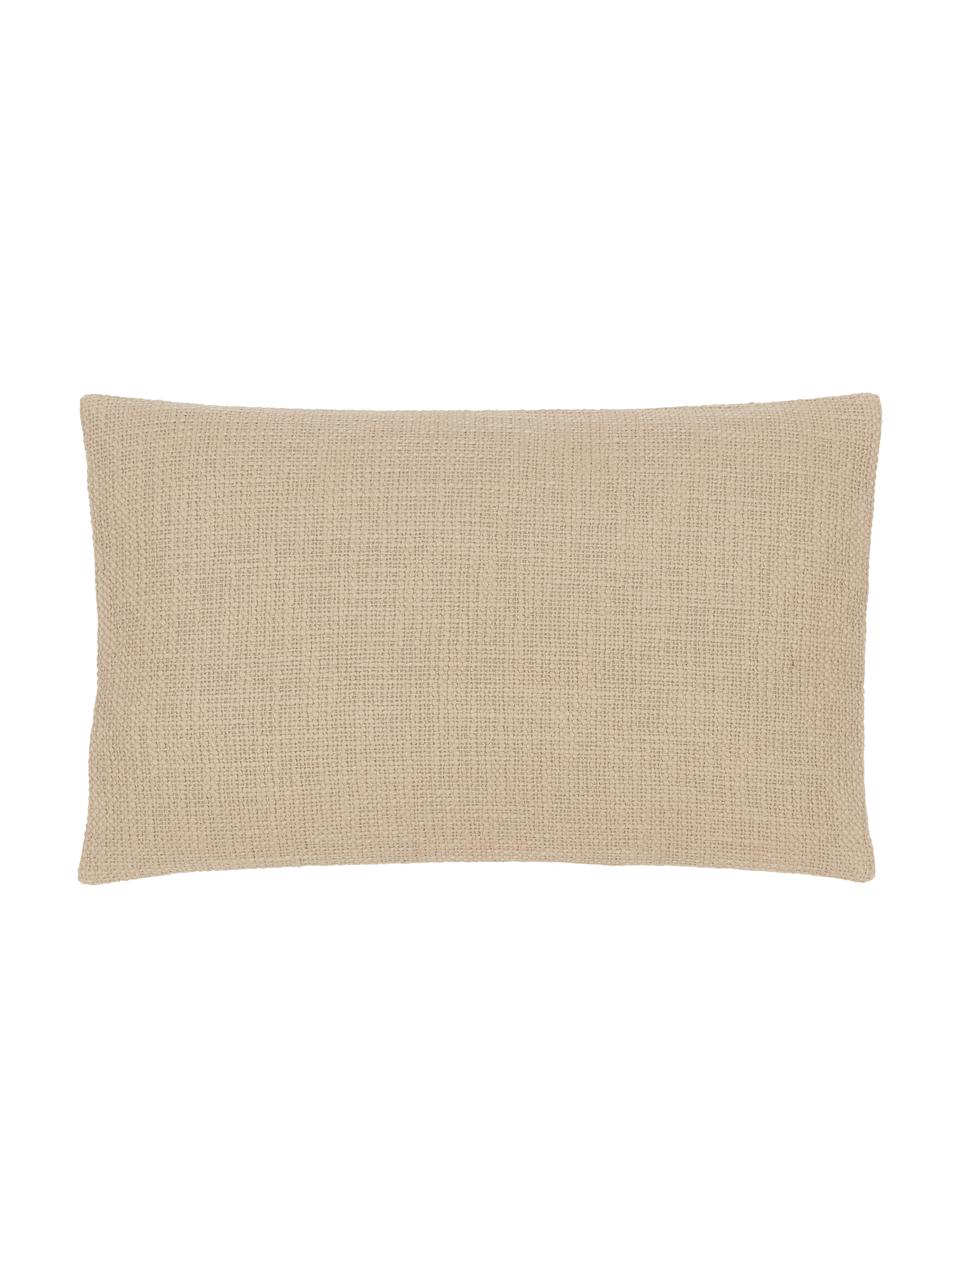 Poszewka na poduszkę Anise, 100% bawełna, Beżowy, S 30 x D 50 cm